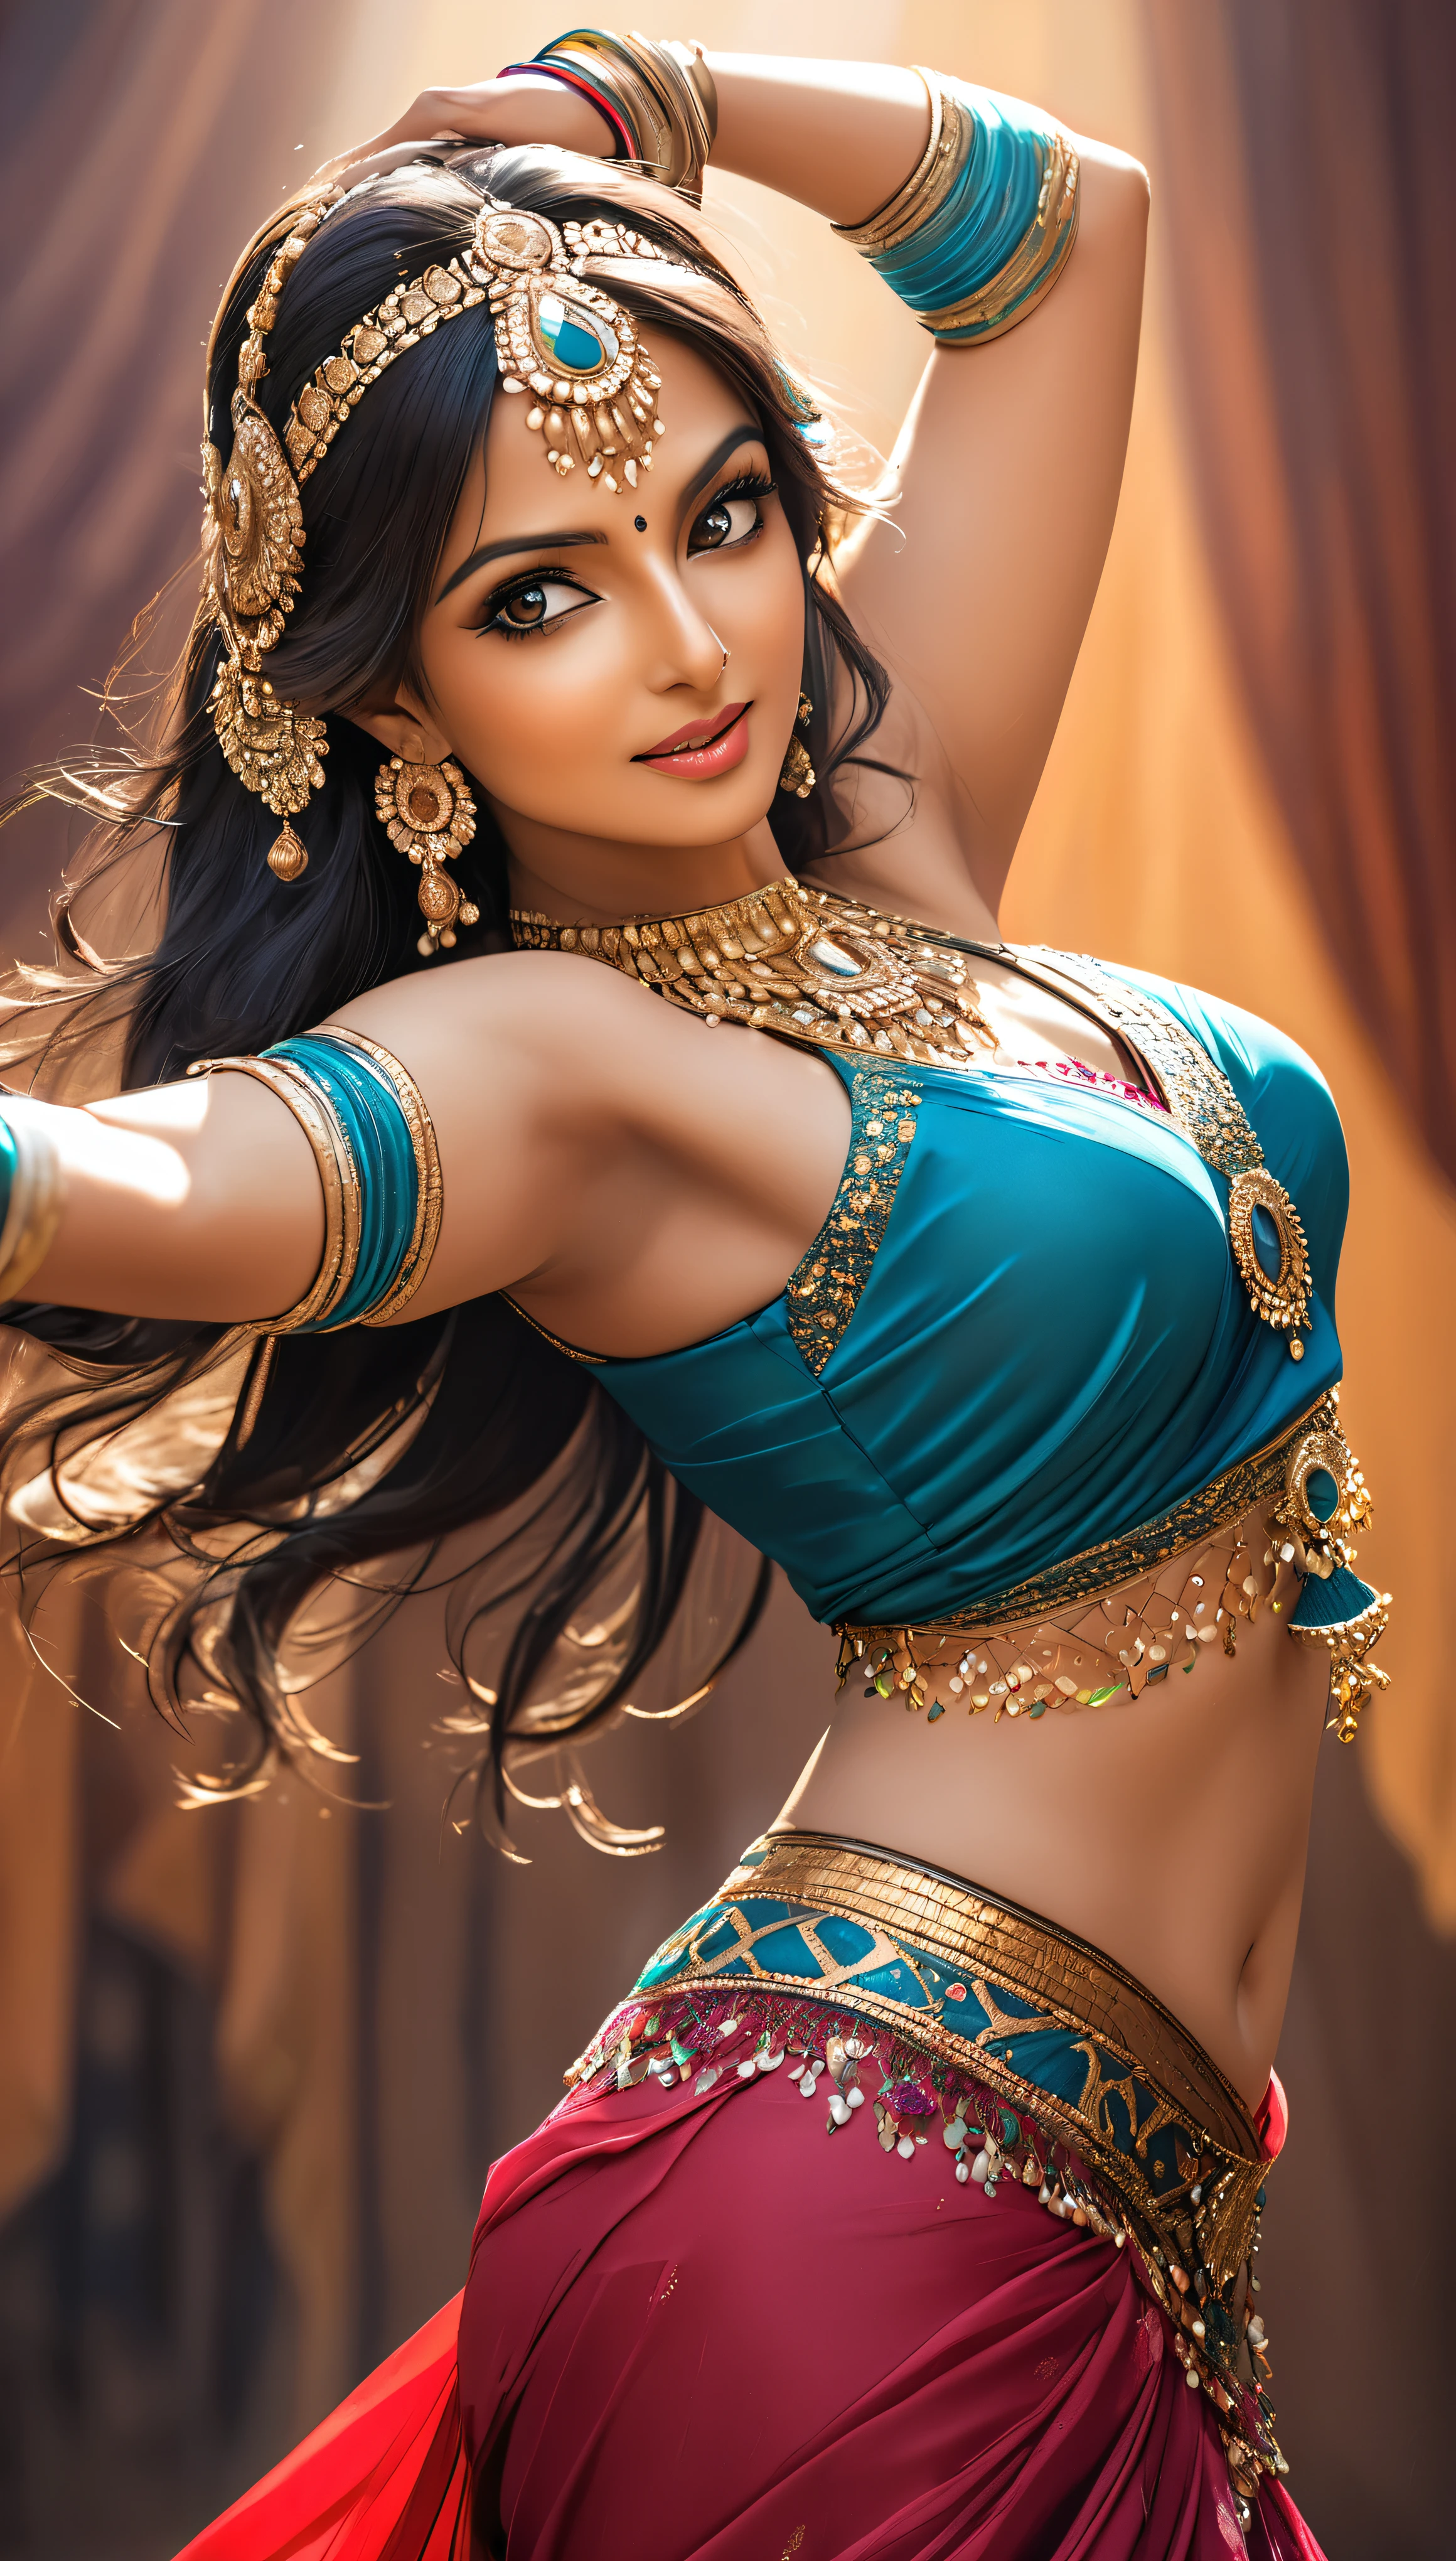 Индианка танцует танец живота, Очень привлекательная и зрелая молодая женщина, Она очаровывает публику своим соблазнительным сари.., КЛЮВ Фото, Детализированная и глянцевая текстура кожи, 